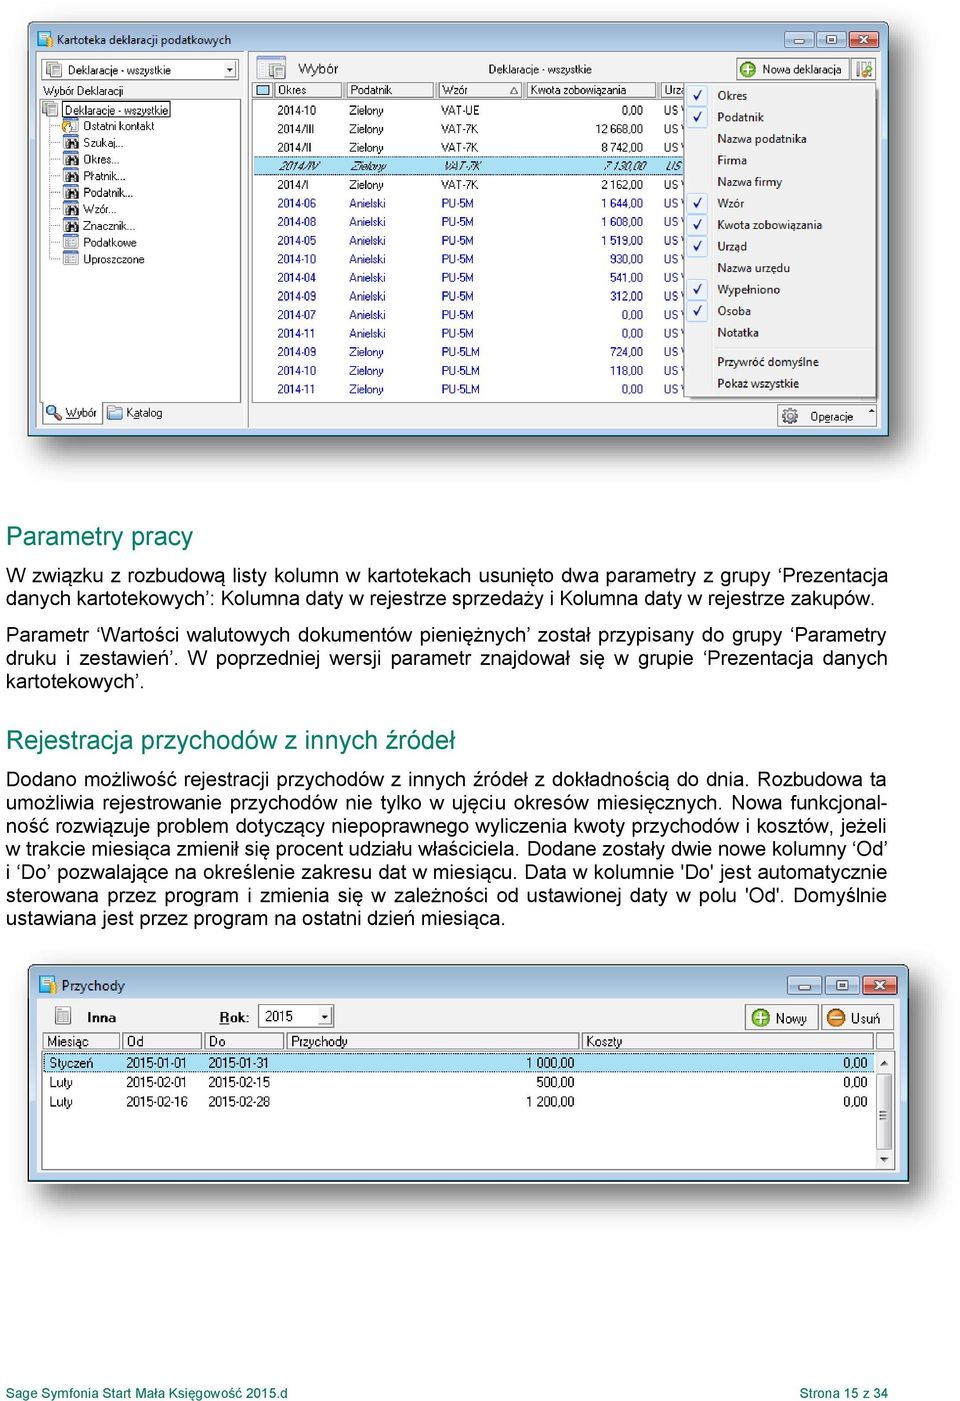 W poprzedniej wersji parametr znajdował się w grupie Prezentacja danych kartotekowych.